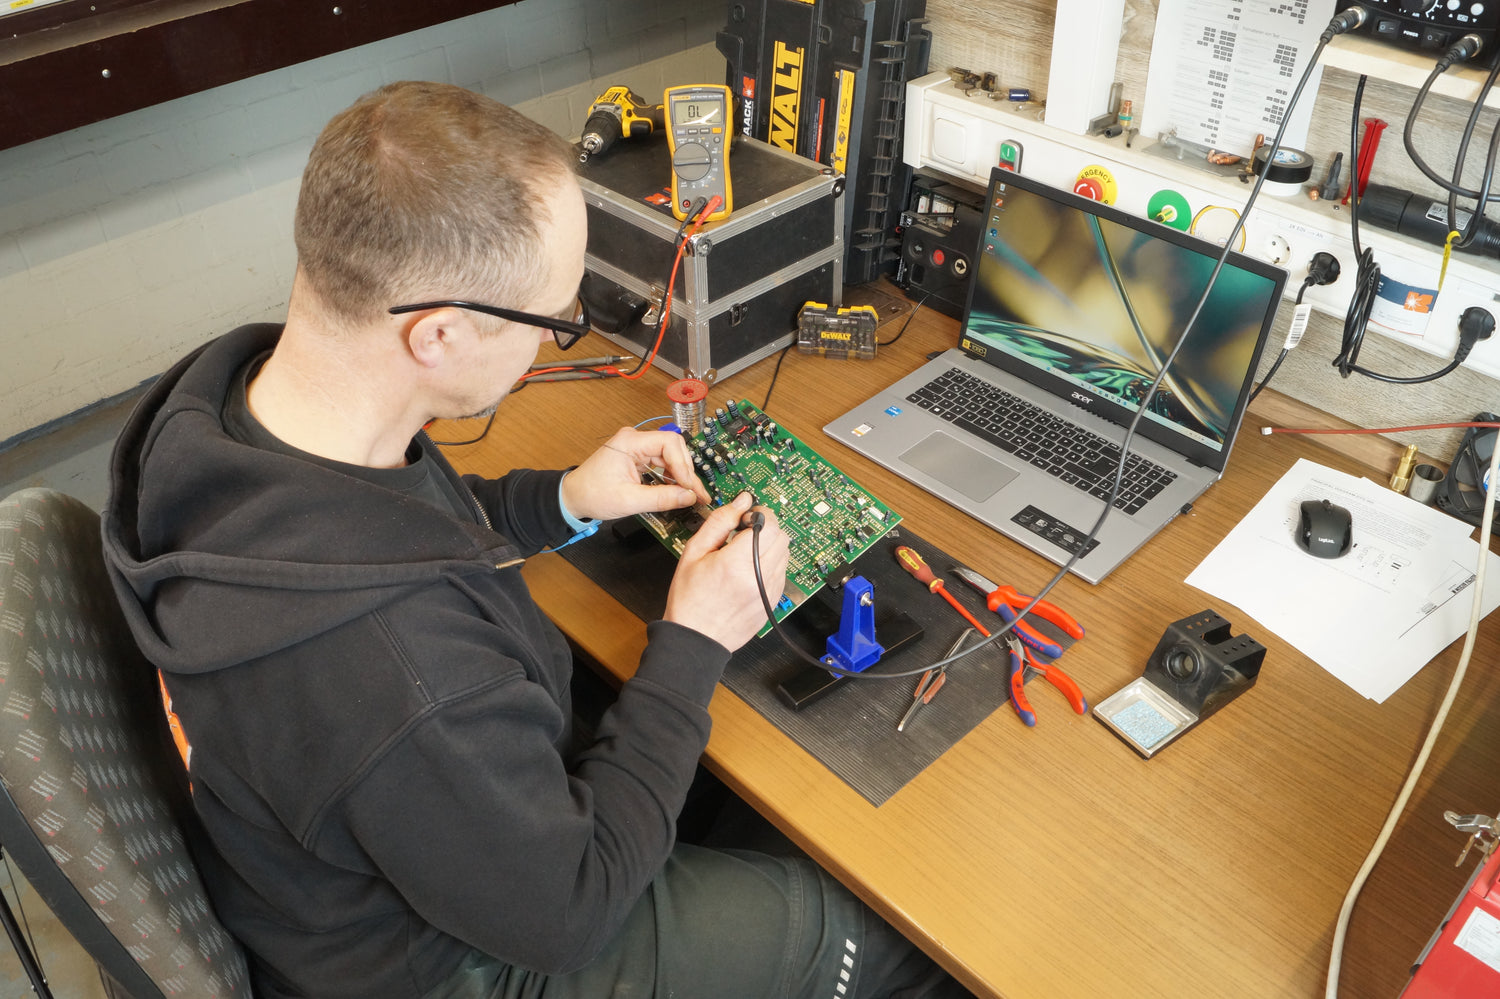 Qualifizierter Techniker der Kaack GmbH bei der sorgfältigen Reparatur eines defekten Schweißgeräts, um dessen Funktionalität und Betriebssicherheit wiederherzustellen.